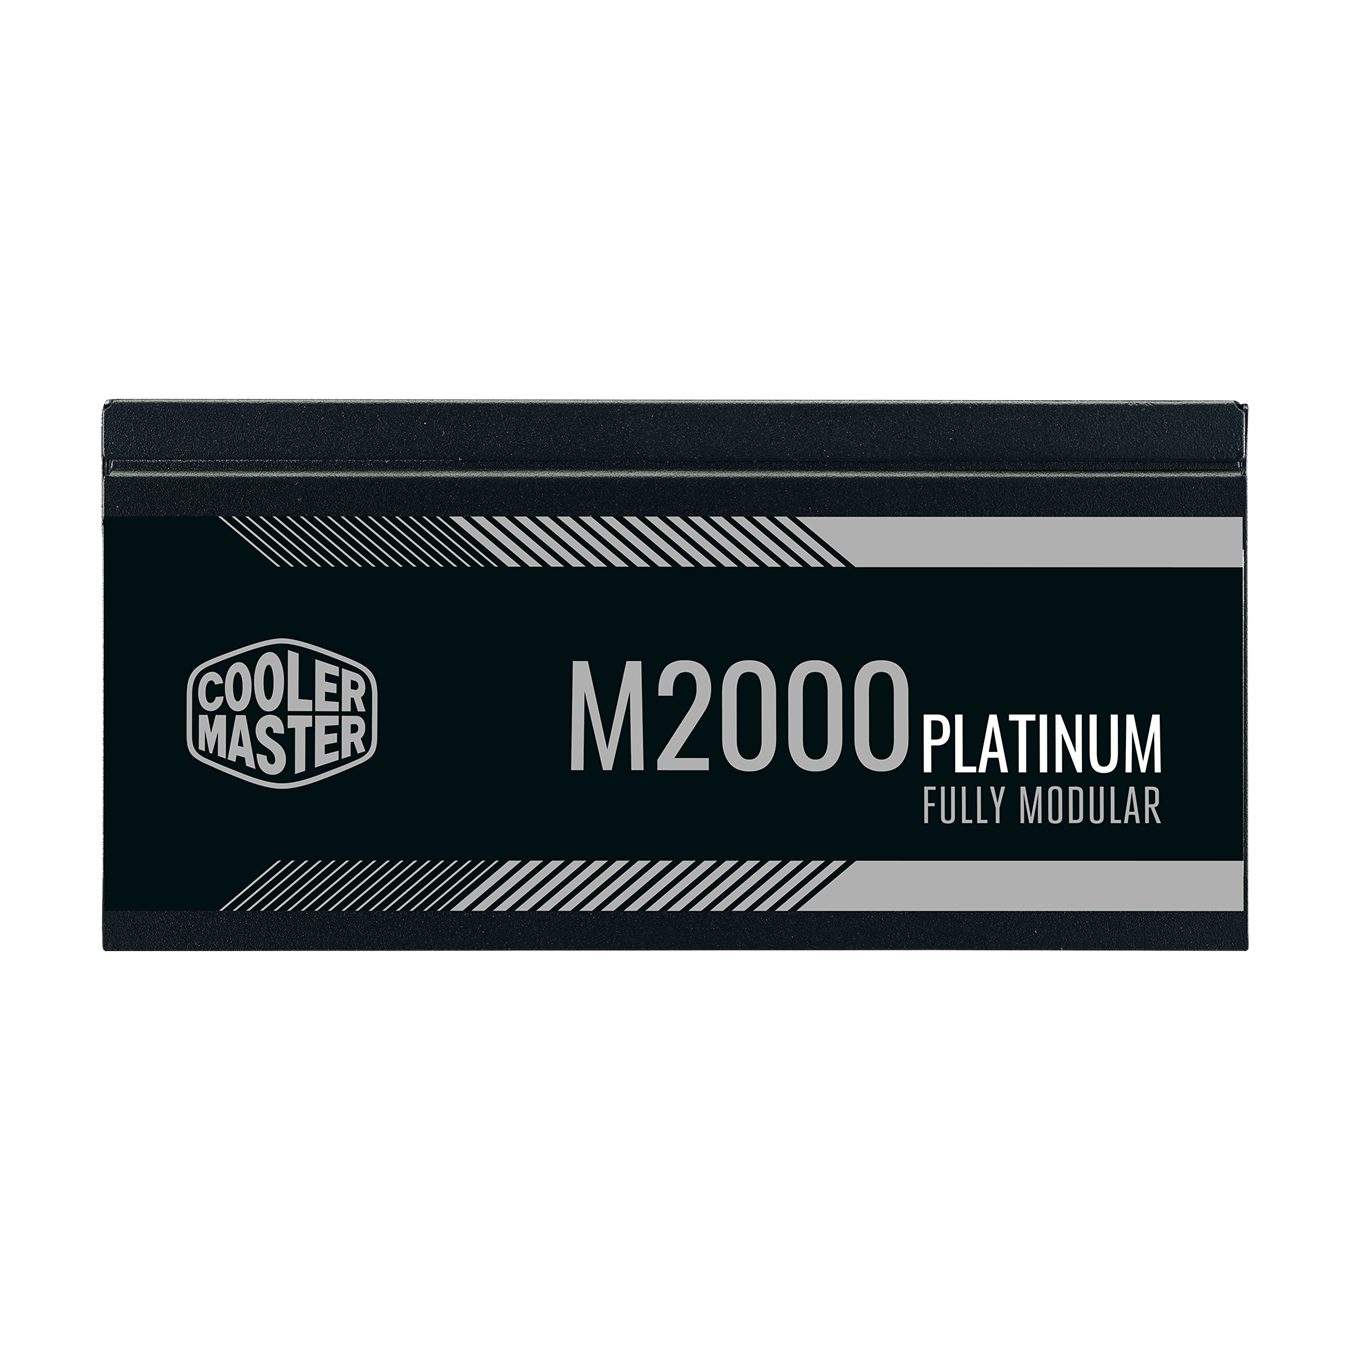 M2000 Platinum - product label